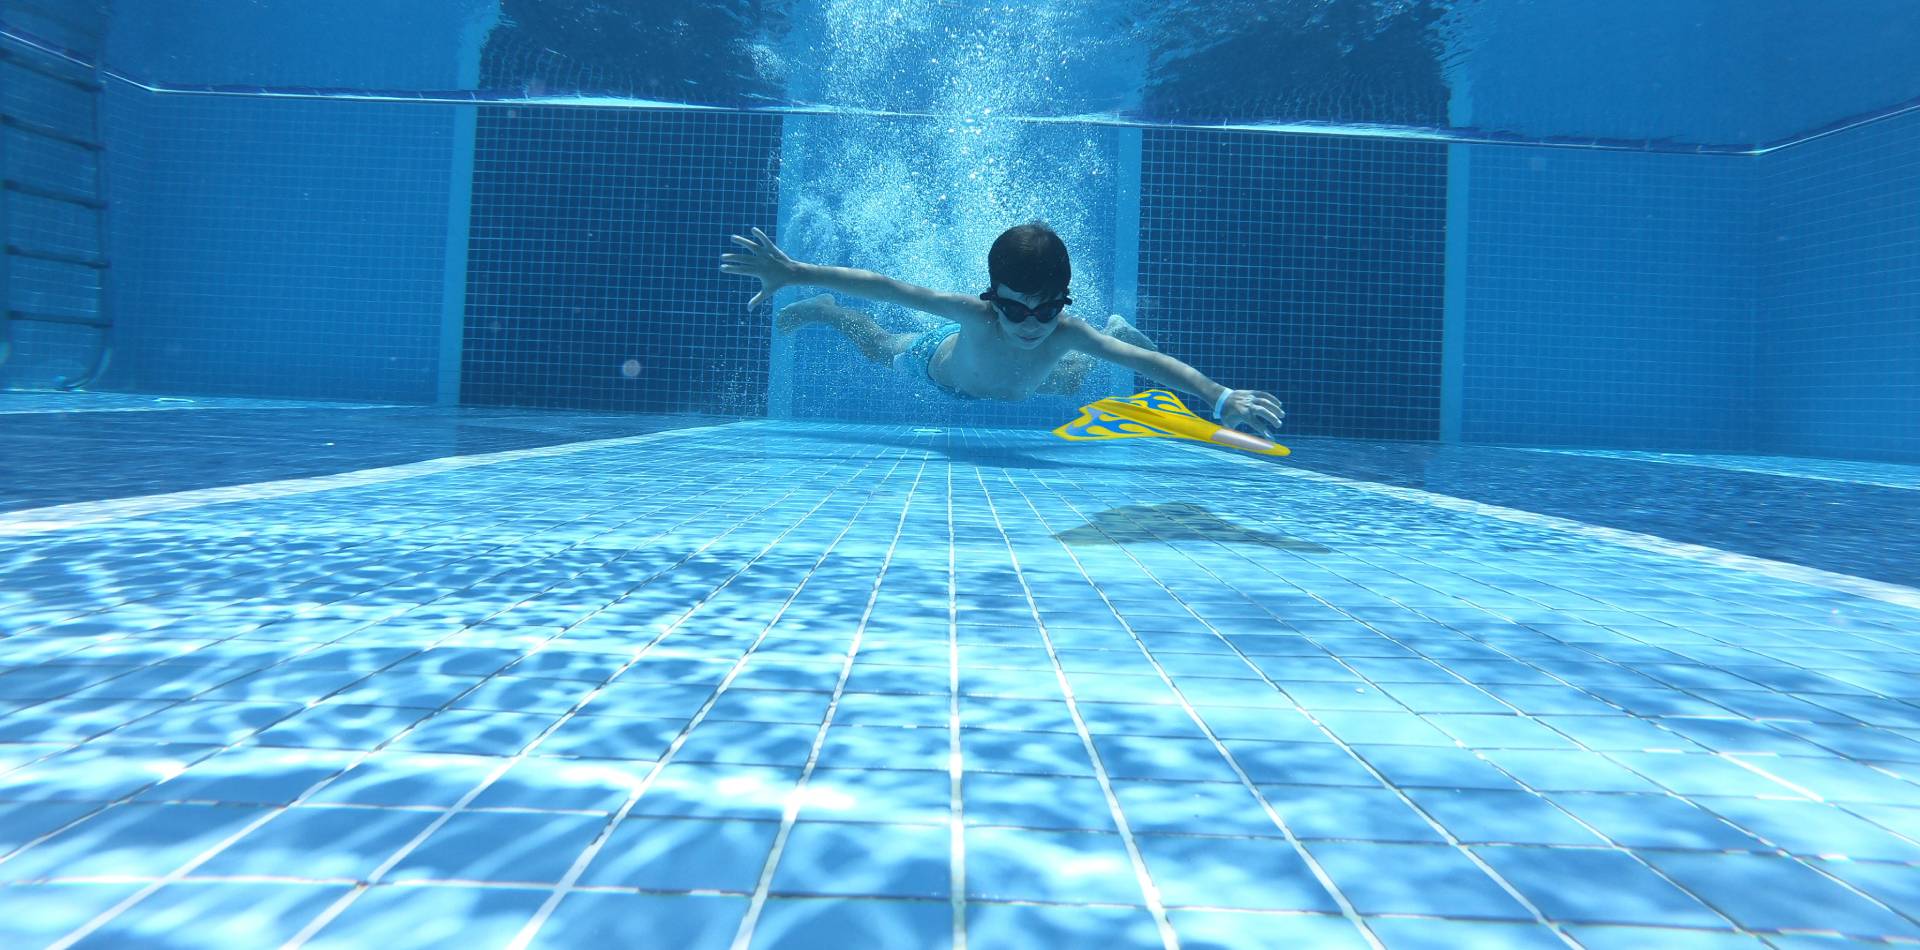 Aqua Jet Underwater Glider Toy